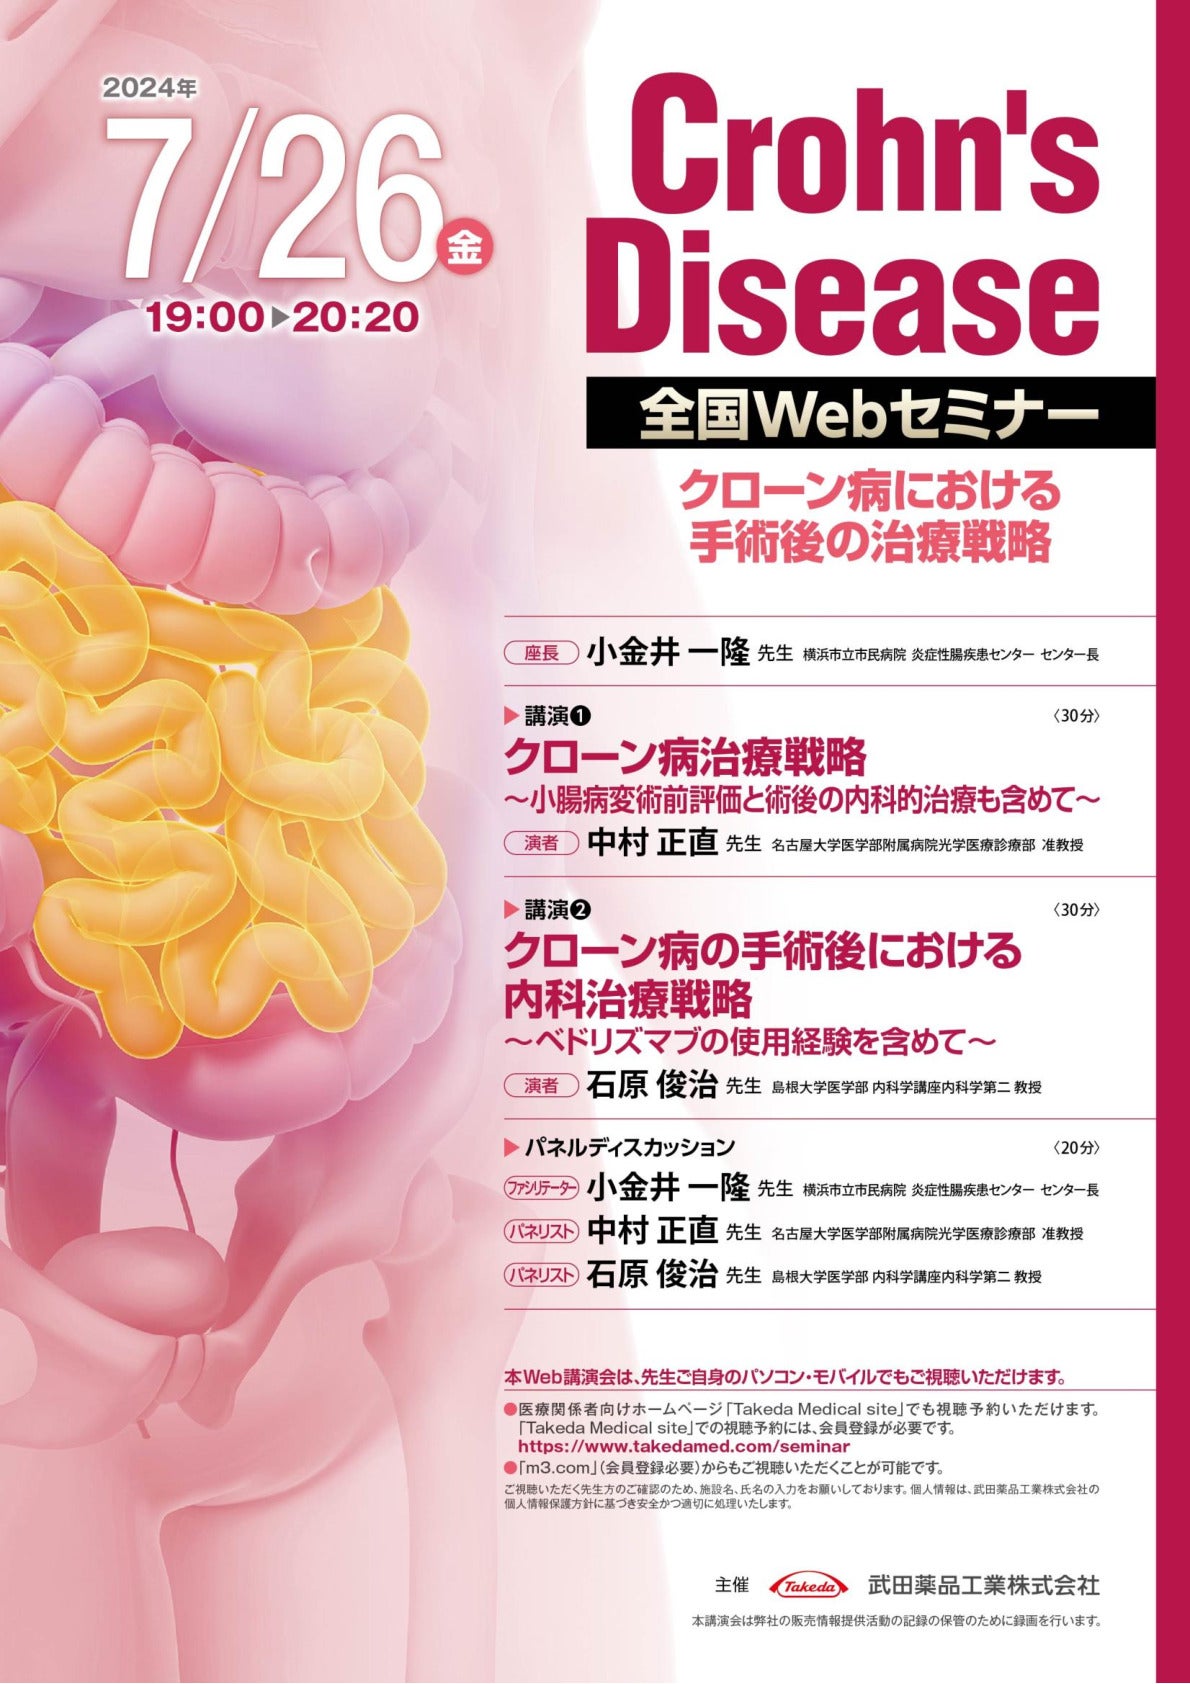 Crohn’s Disease 全国Webセミナー
クローン病における手術後の治療戦略